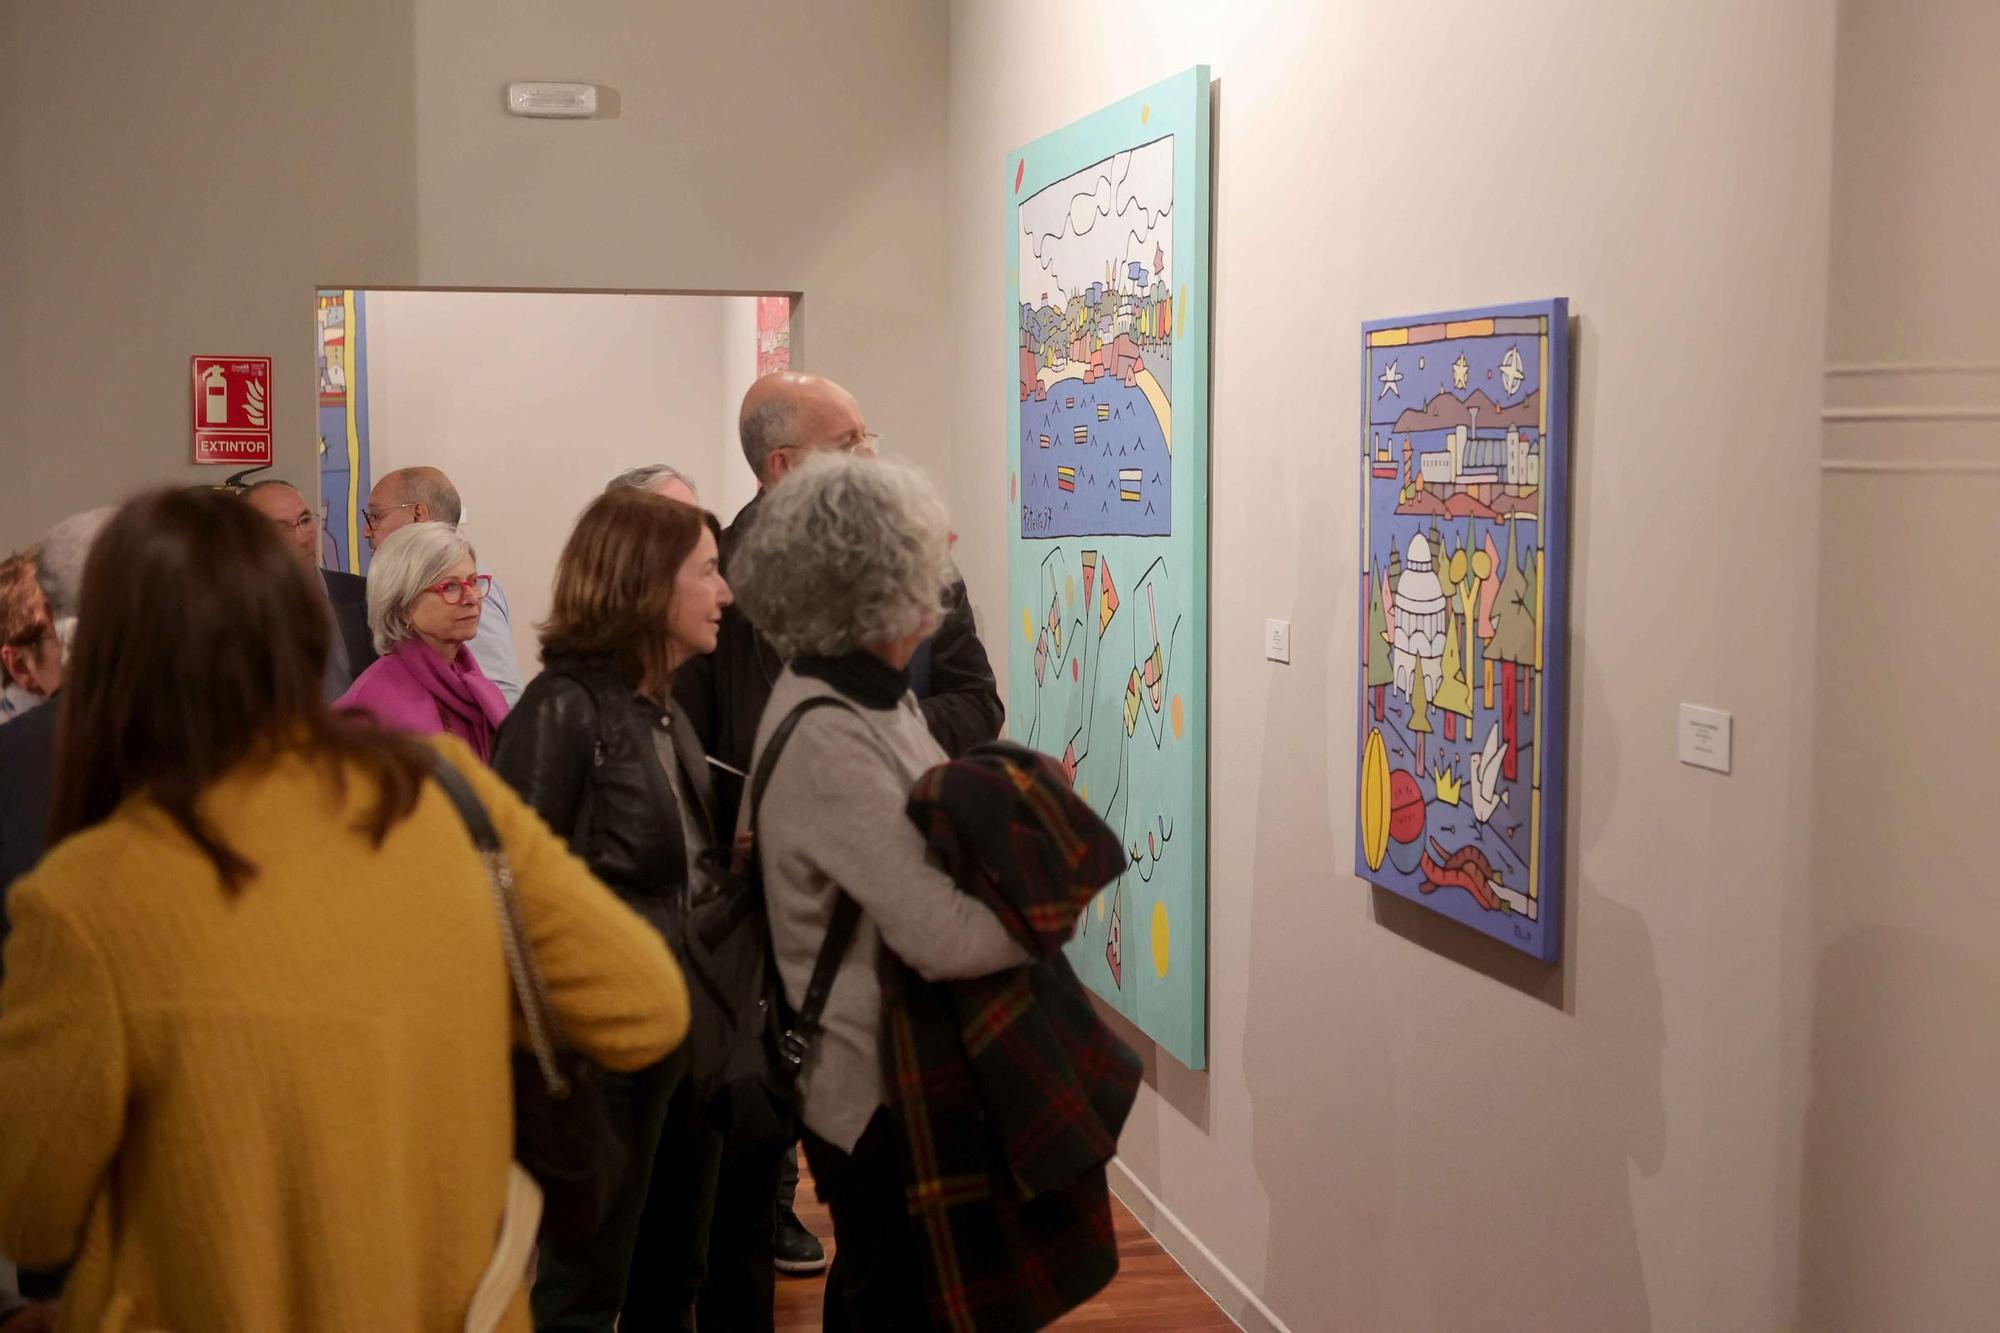 Inauguración de la muestra artística 'Peteiro' en el Kiosco Alfonso